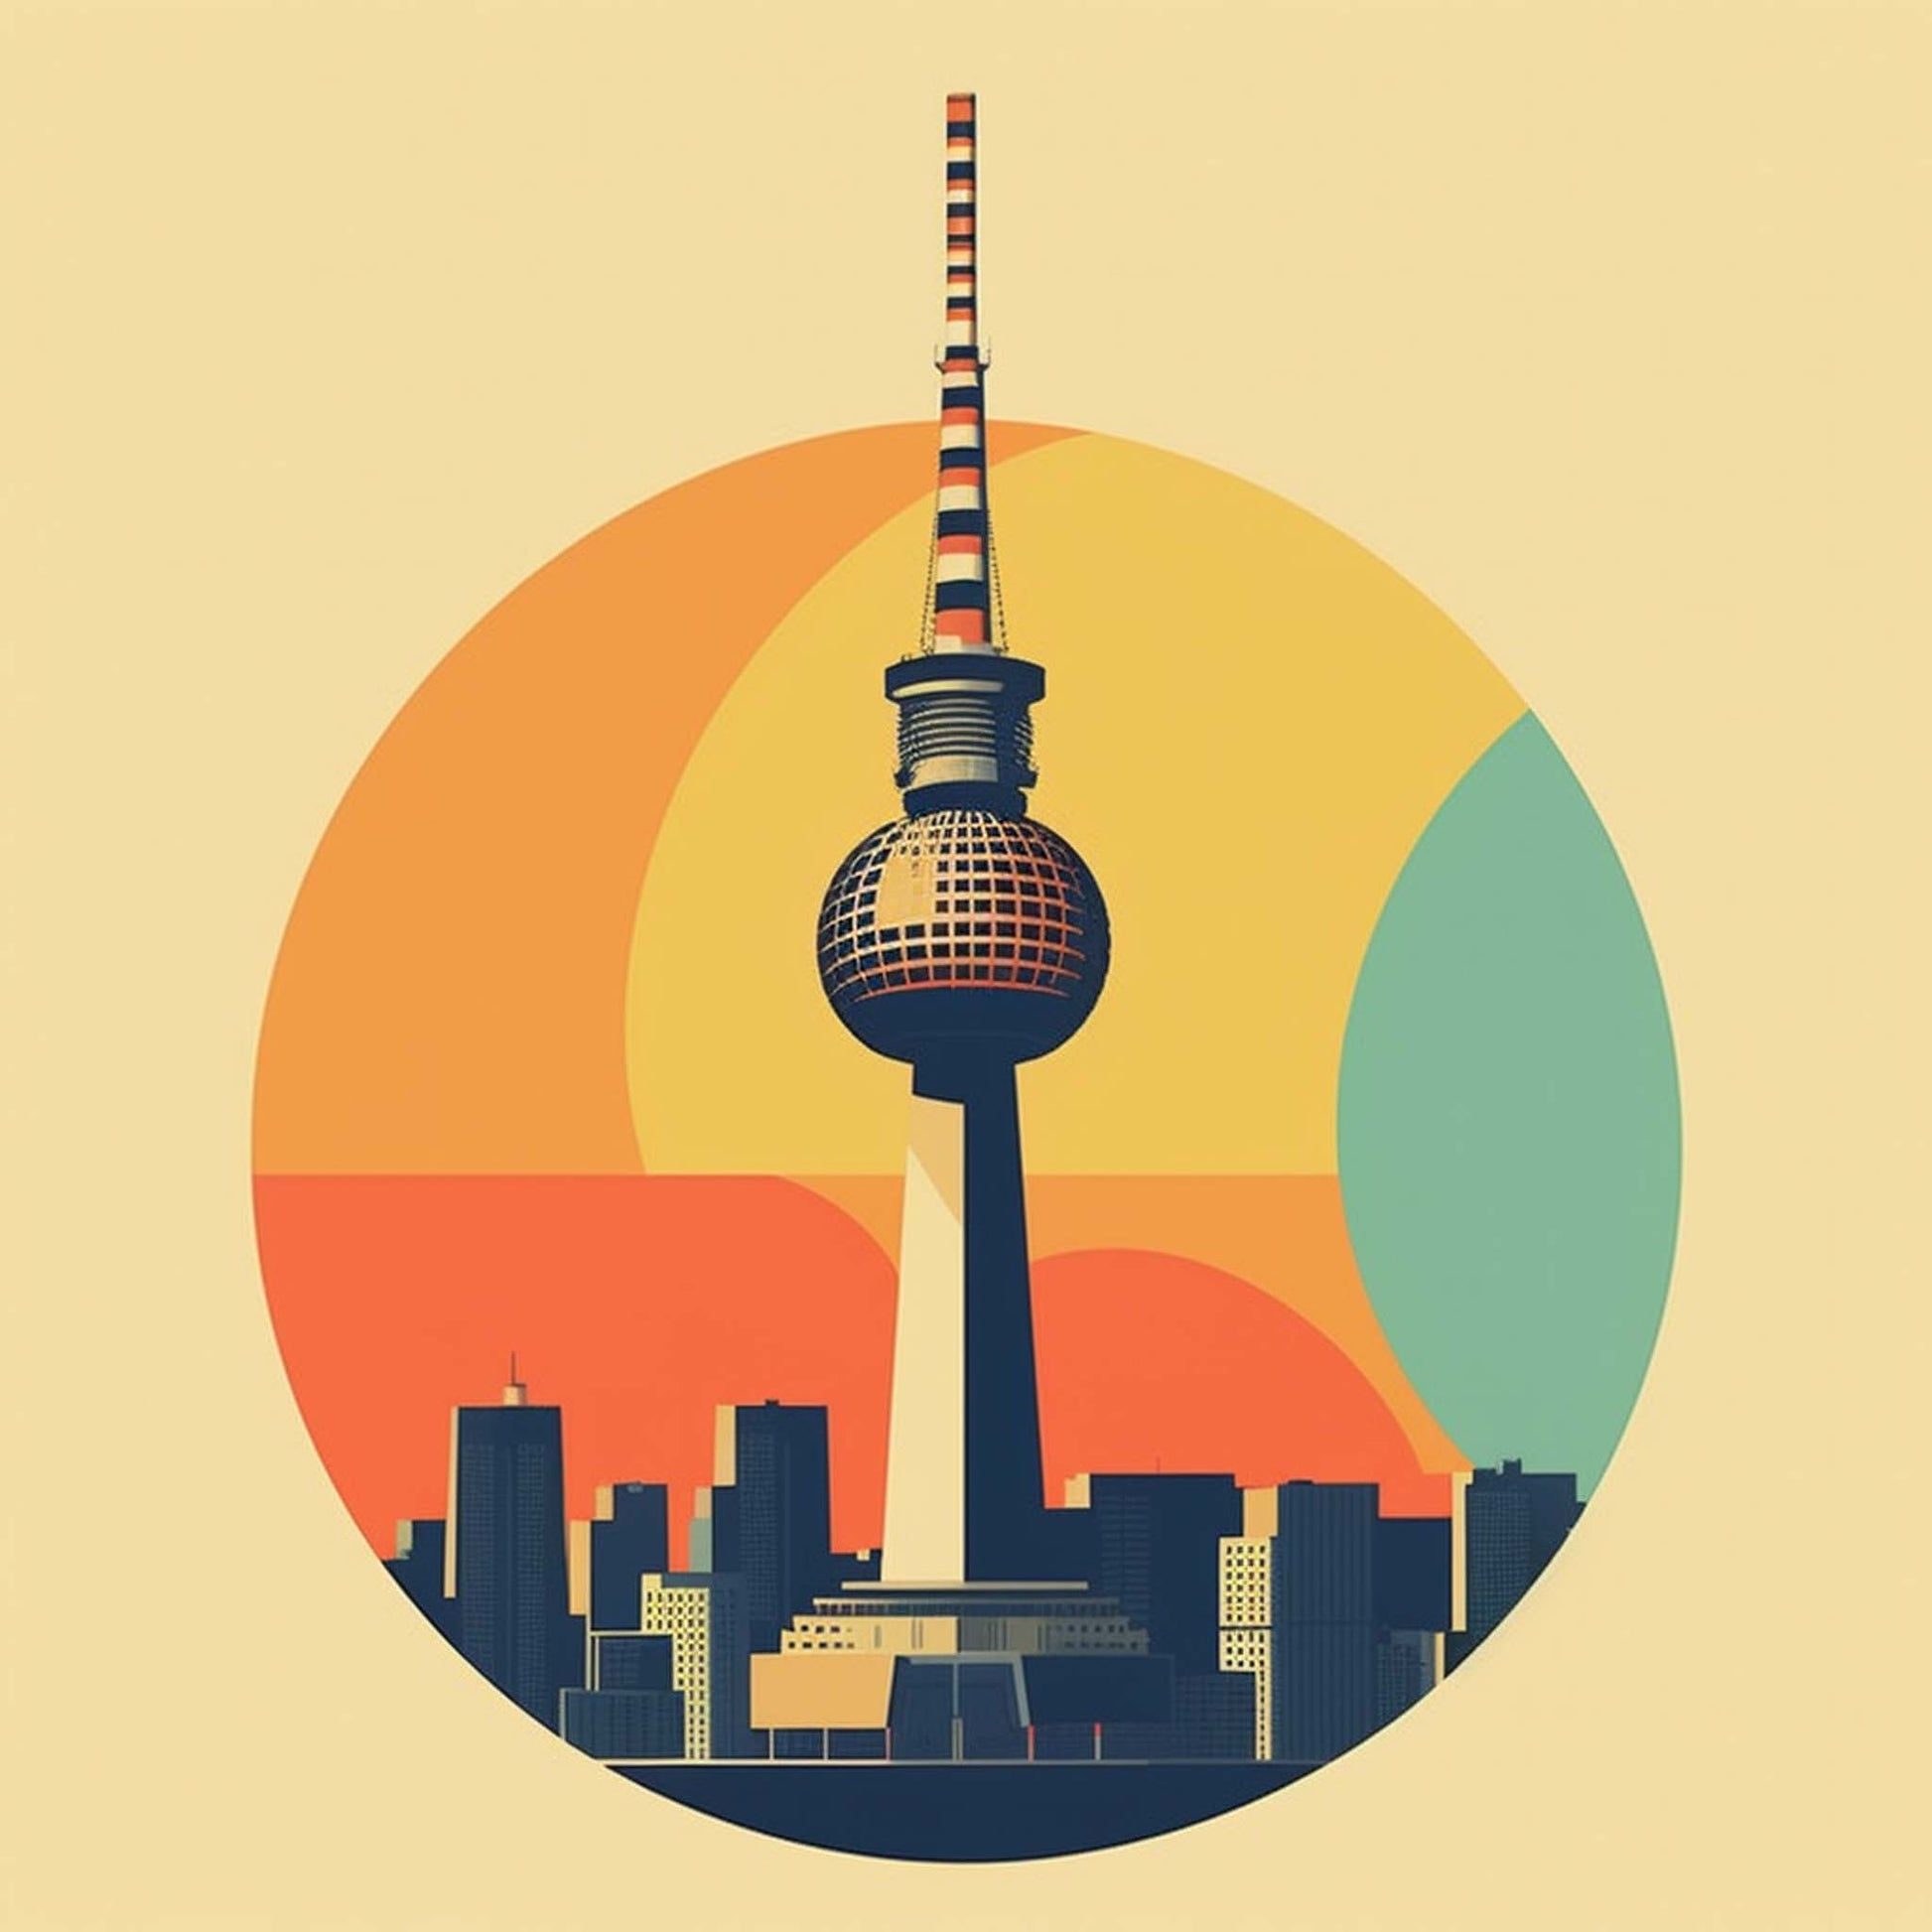 Urbanisto - Berlin Fernsehturm - Wandbild in der Stilrichtung des Minimalismus